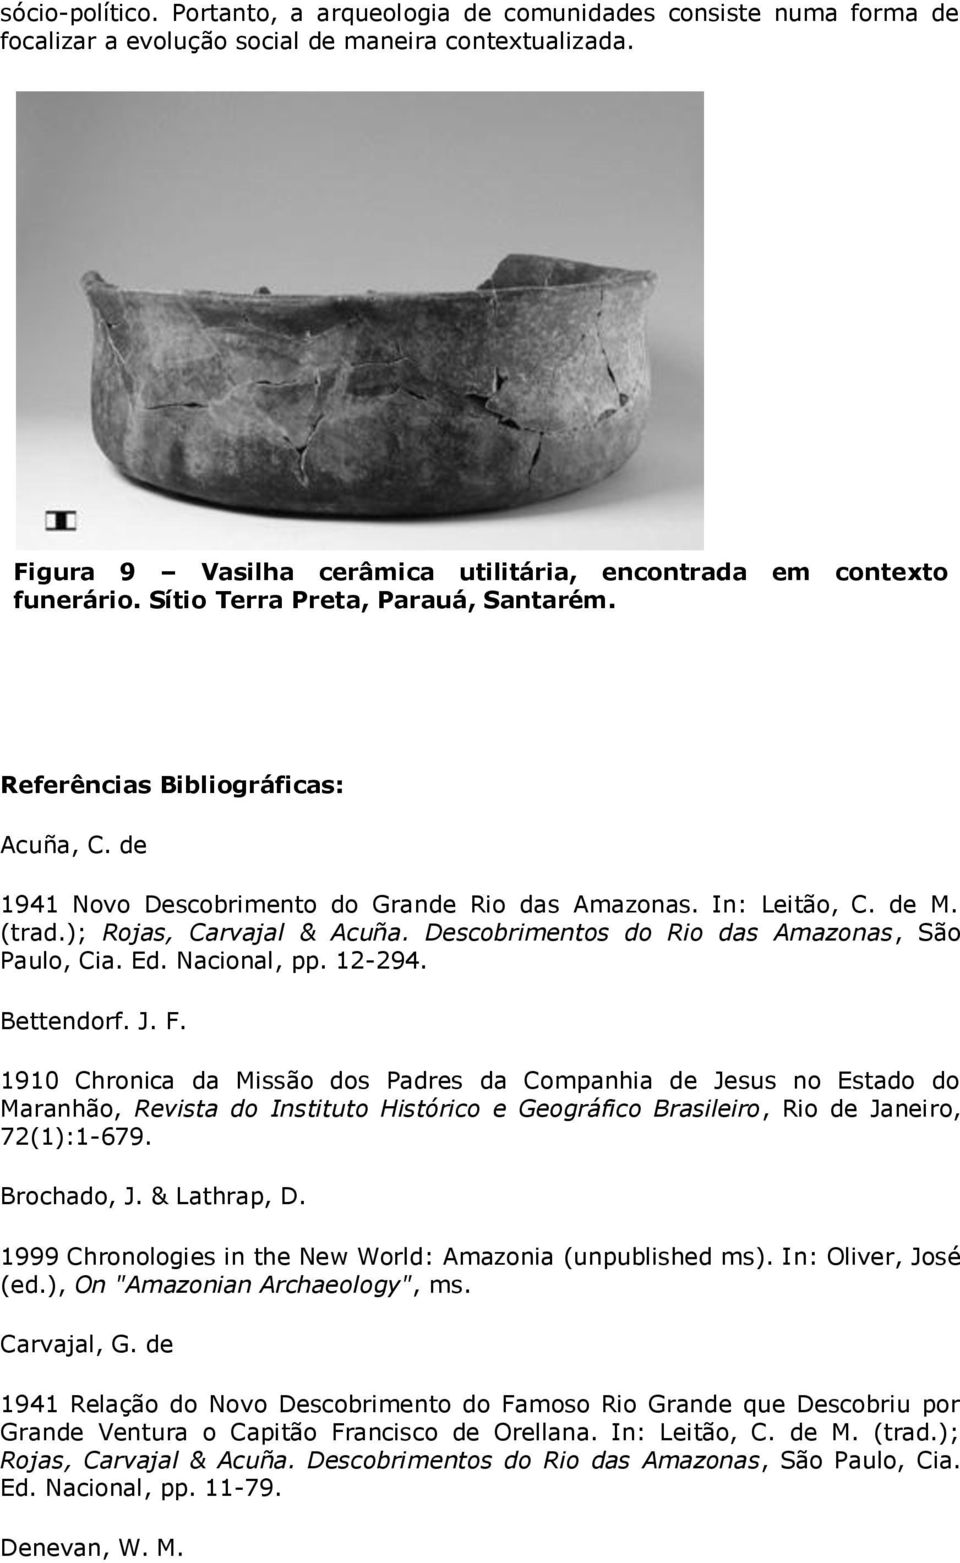 de 1941 Novo Descobrimento do Grande Rio das Amazonas. In: Leitão, C. de M. (trad.); Rojas, Carvajal & Acuña. Descobrimentos do Rio das Amazonas, São Paulo, Cia. Ed. Nacional, pp. 12-294. Bettendorf.